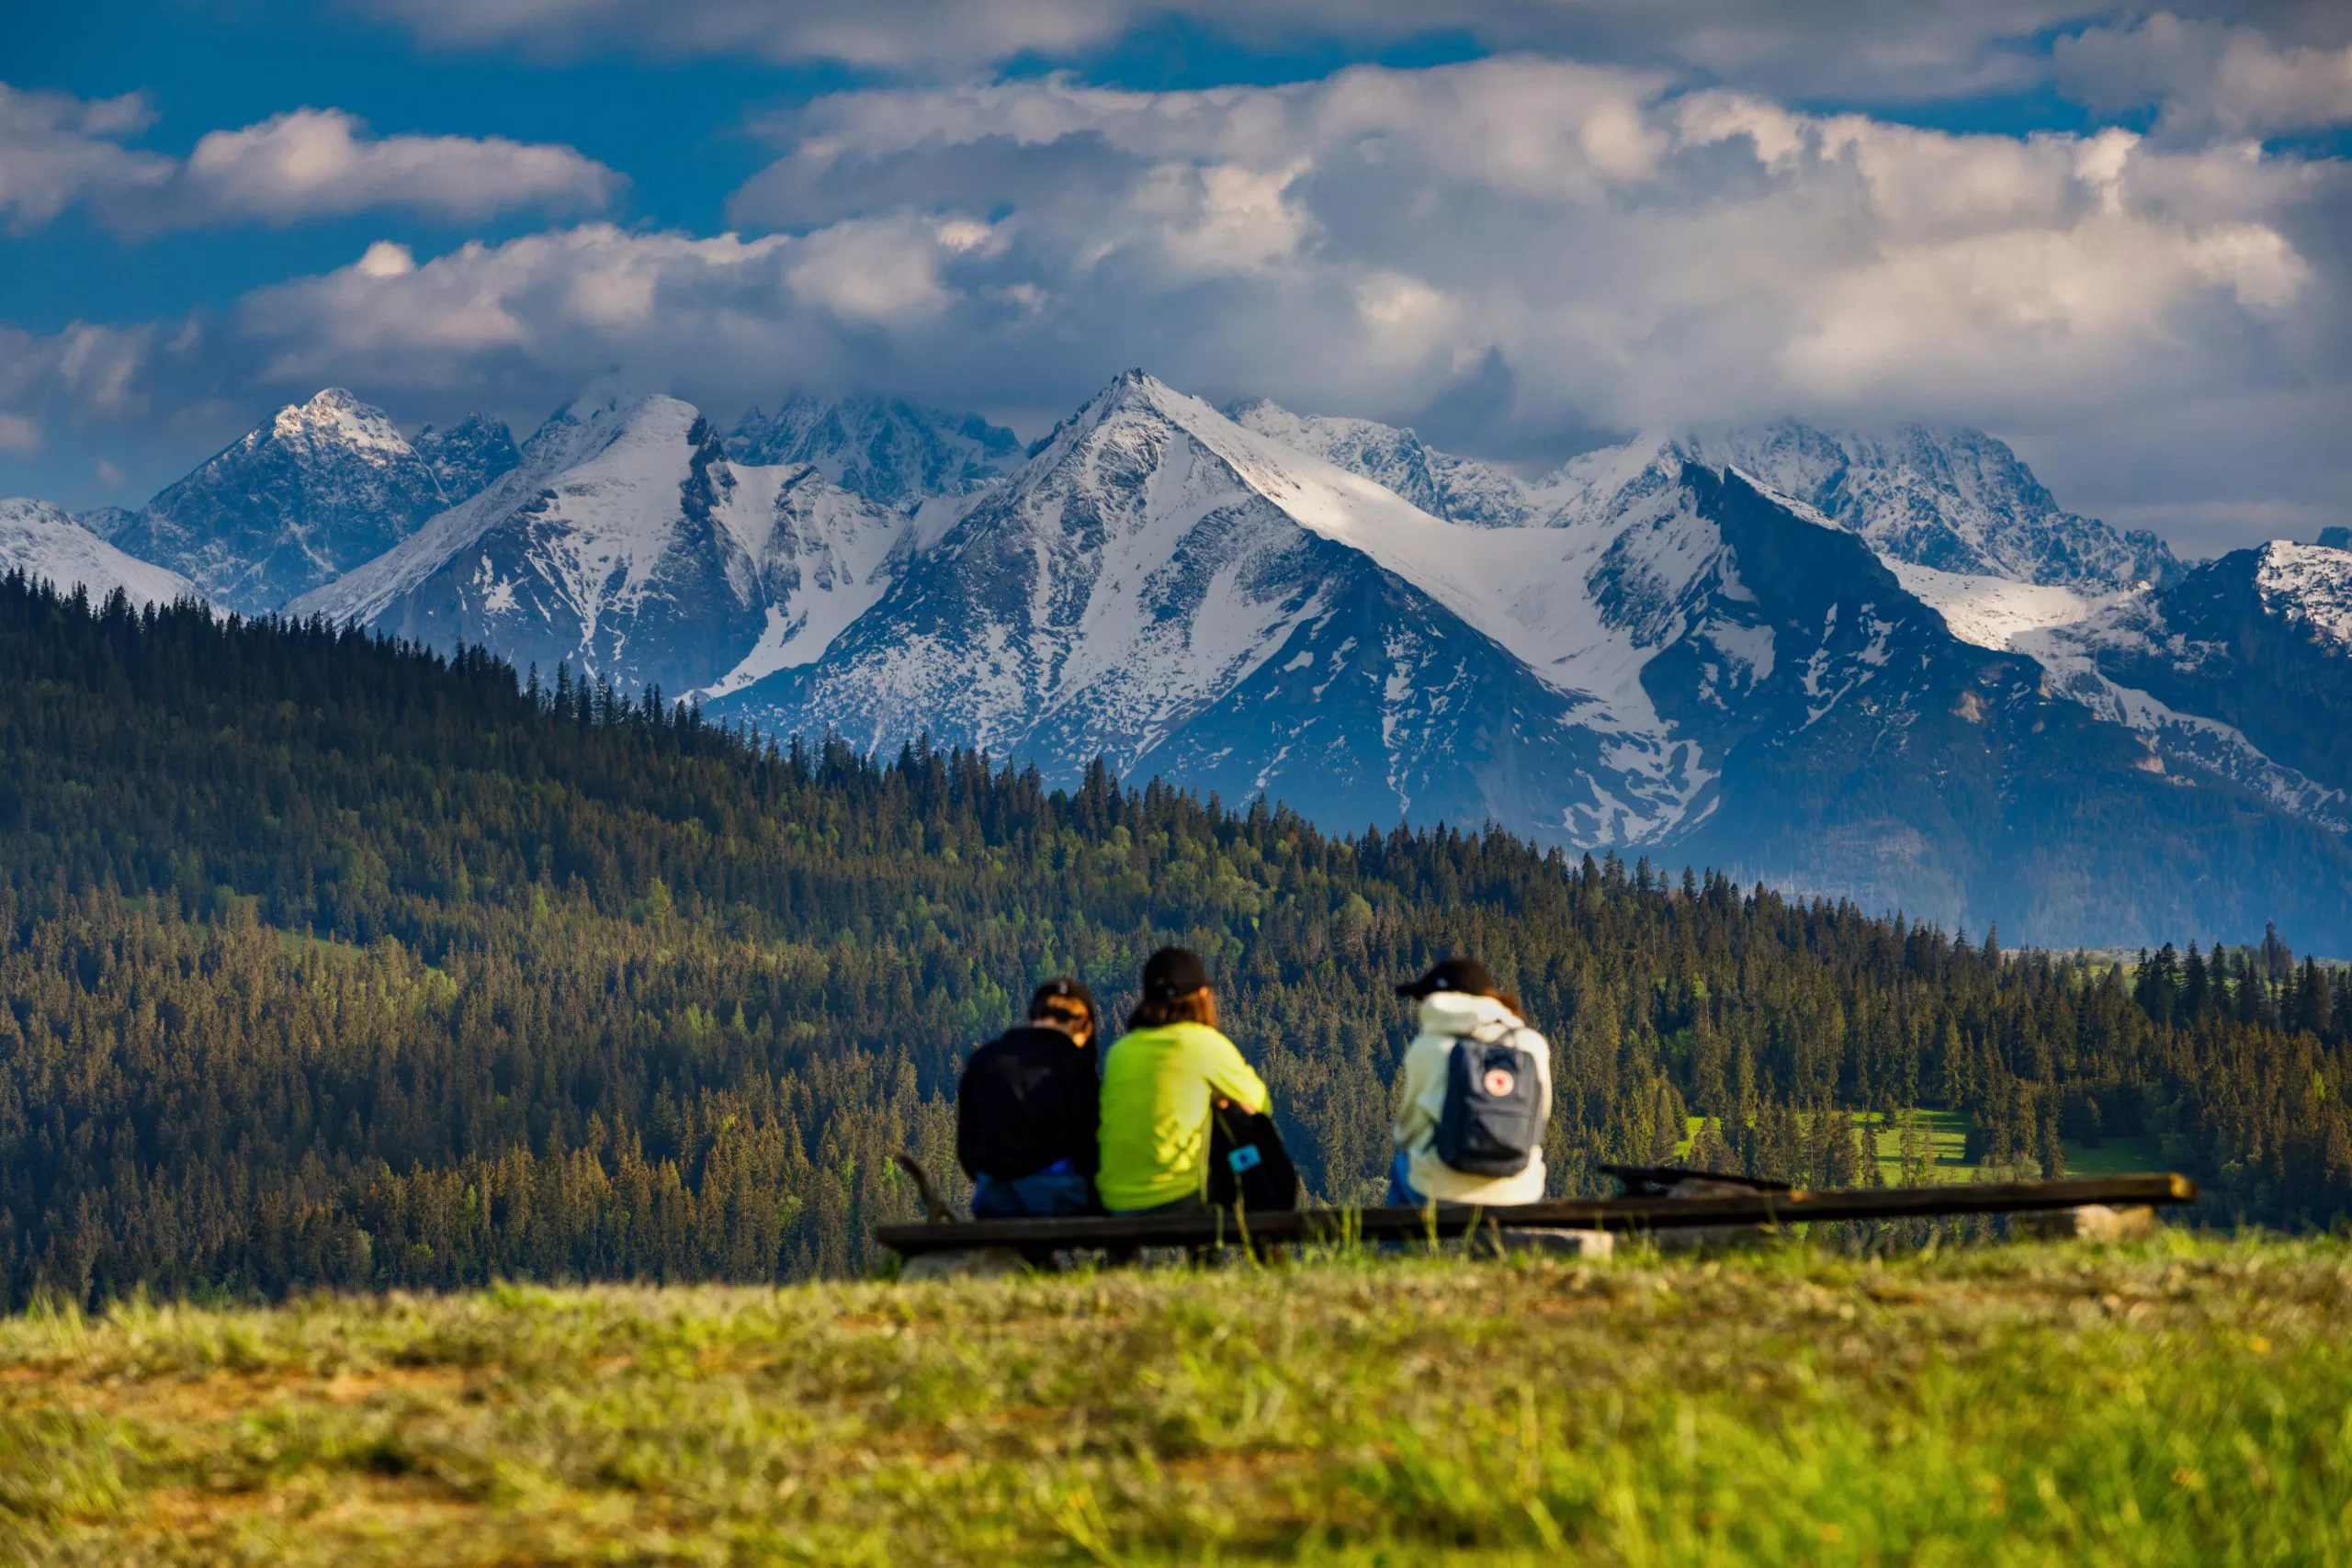 Ein Blick auf drei junge Leute mit Rucksäcken, die auf einer Bank sitzen und die schöne Aussicht auf die schneebedeckten, felsigen Gipfel der Tatra genießen. Unterhalb der Berge befindet sich ein bewaldeter Bereich. Der Himmel ist blau mit vielen weißen Wolken bedeckt, die zum Teil die Berggipfel verdecken.